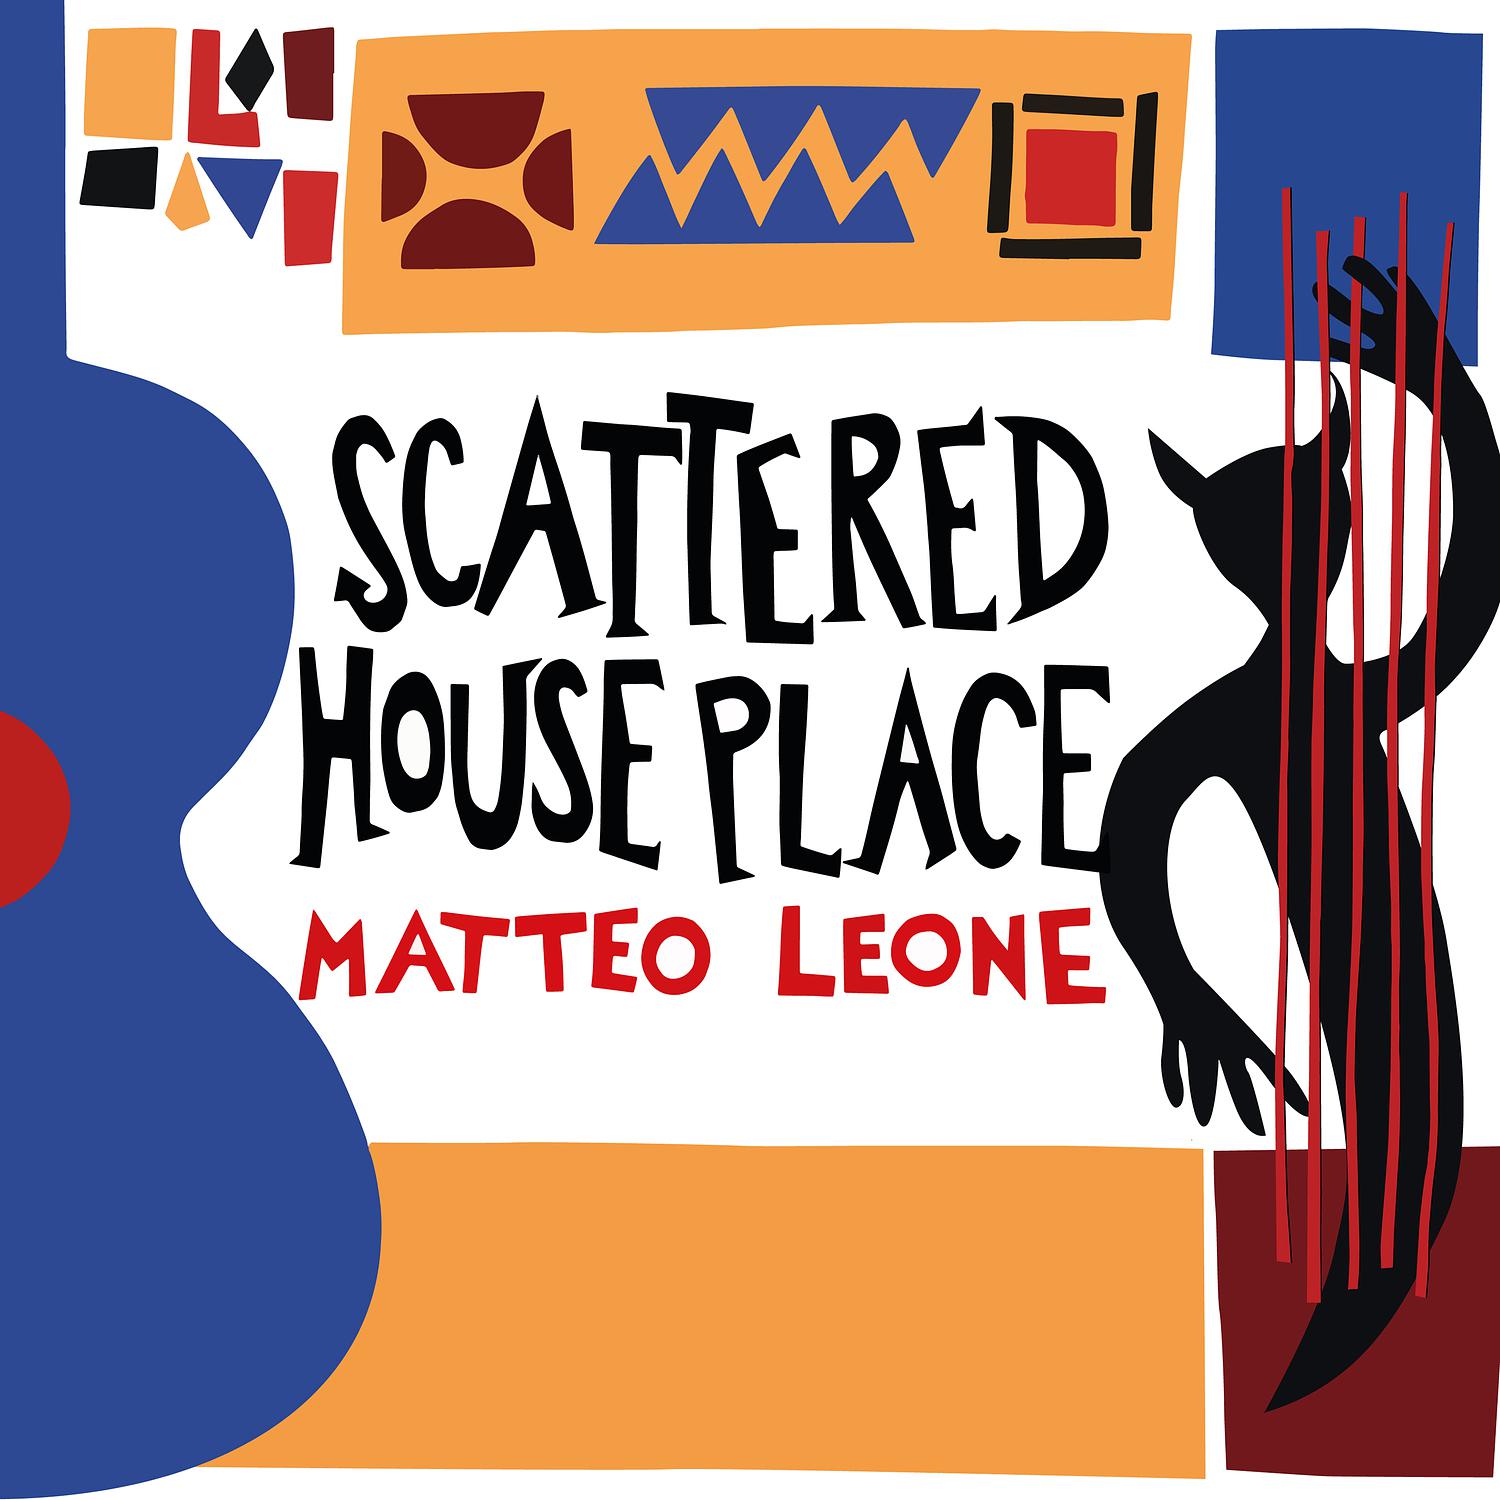 Matteo Leone - Miss Mad